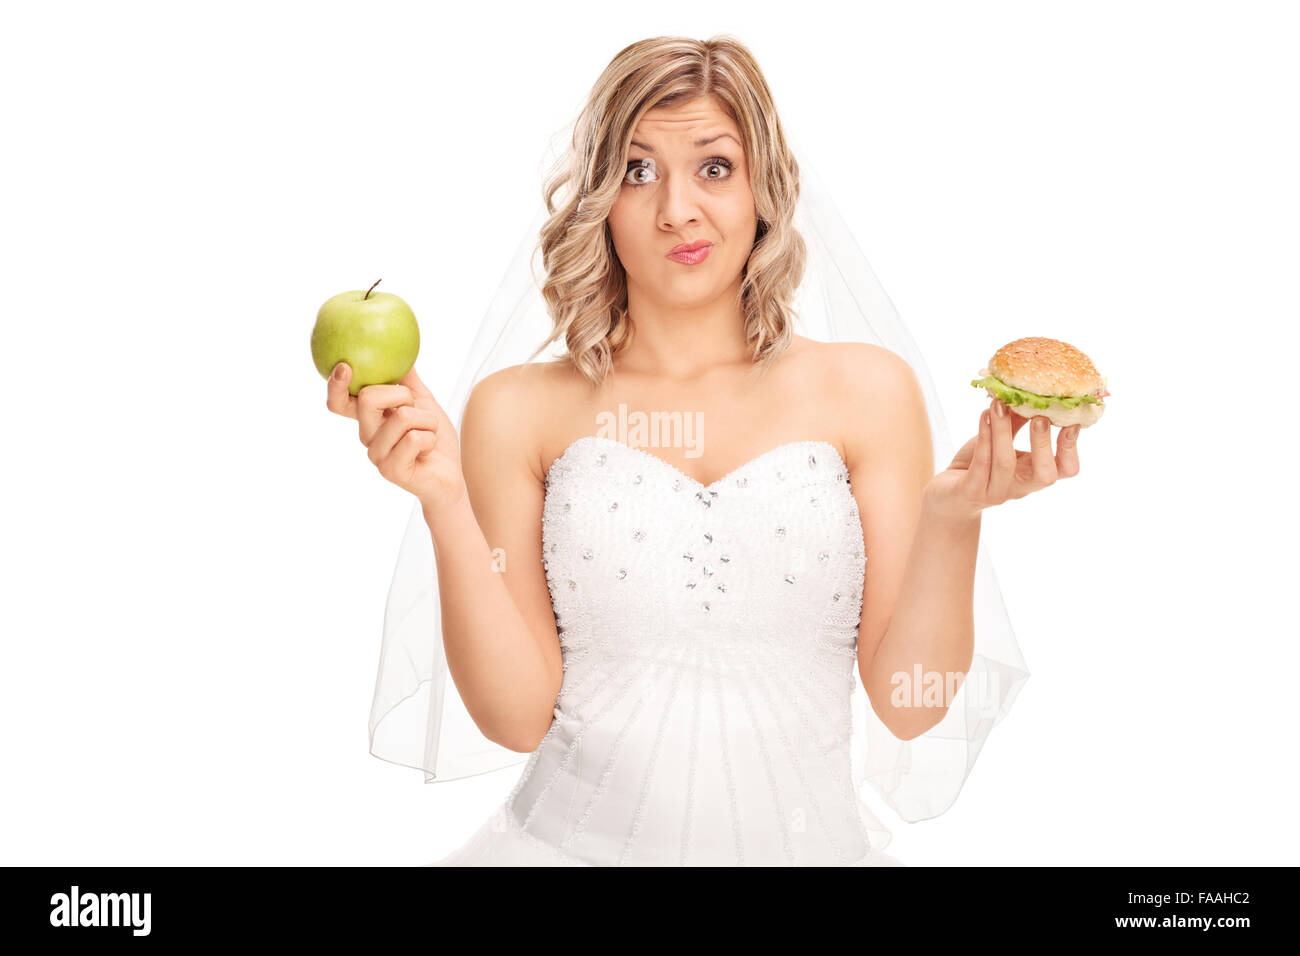 Jeune femme tenant une pomme dans une main et un hamburger dans l'autre isolé sur fond blanc Banque D'Images